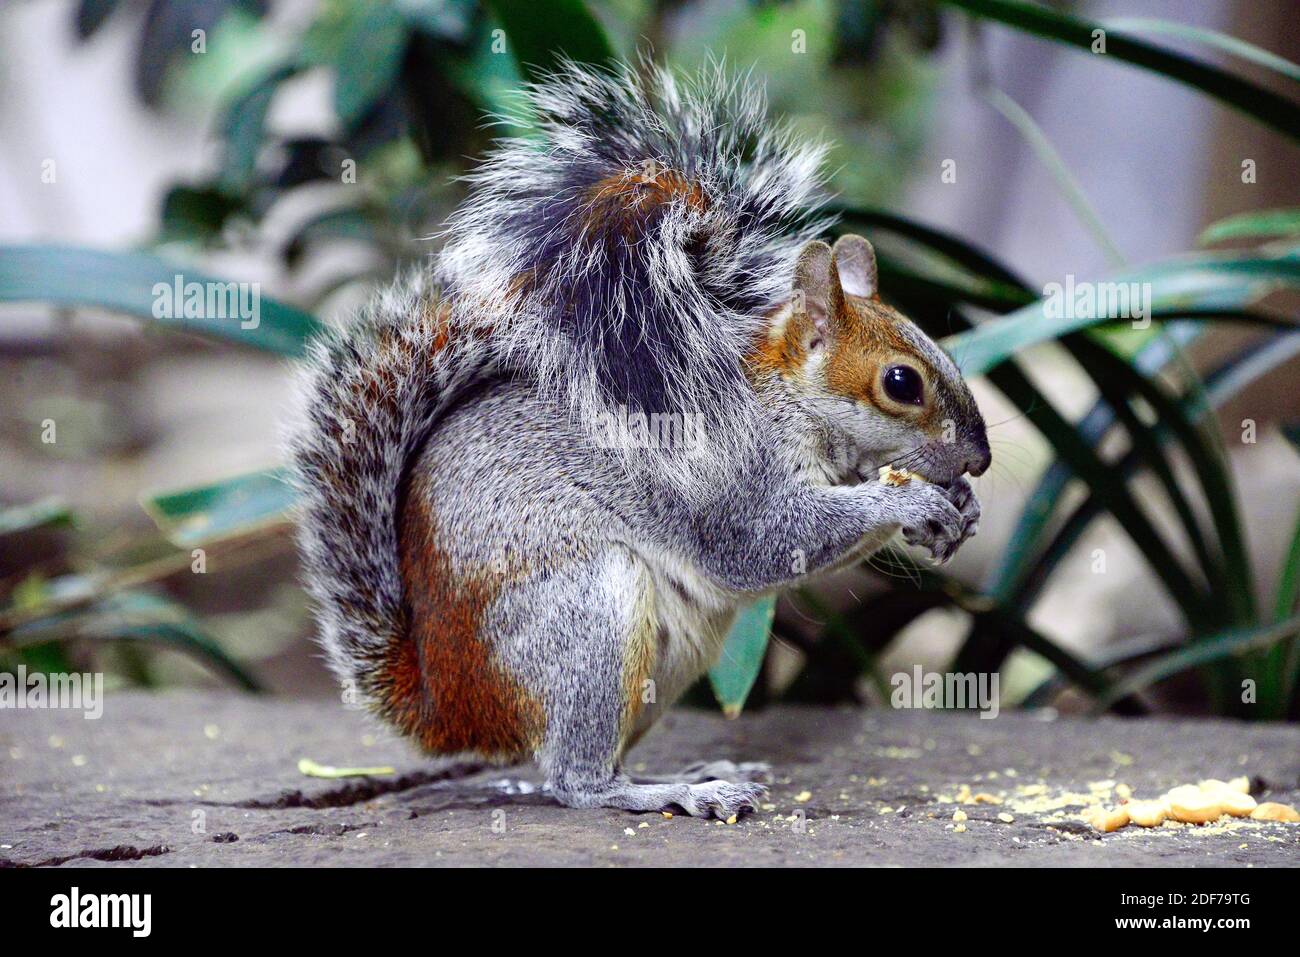 L'écureuil gris mexicain (Sciurus aureogaster) est un écureuil originaire du Mexique et du Guatemala. Cette photo a été prise dans un jardin de Mexico. Banque D'Images